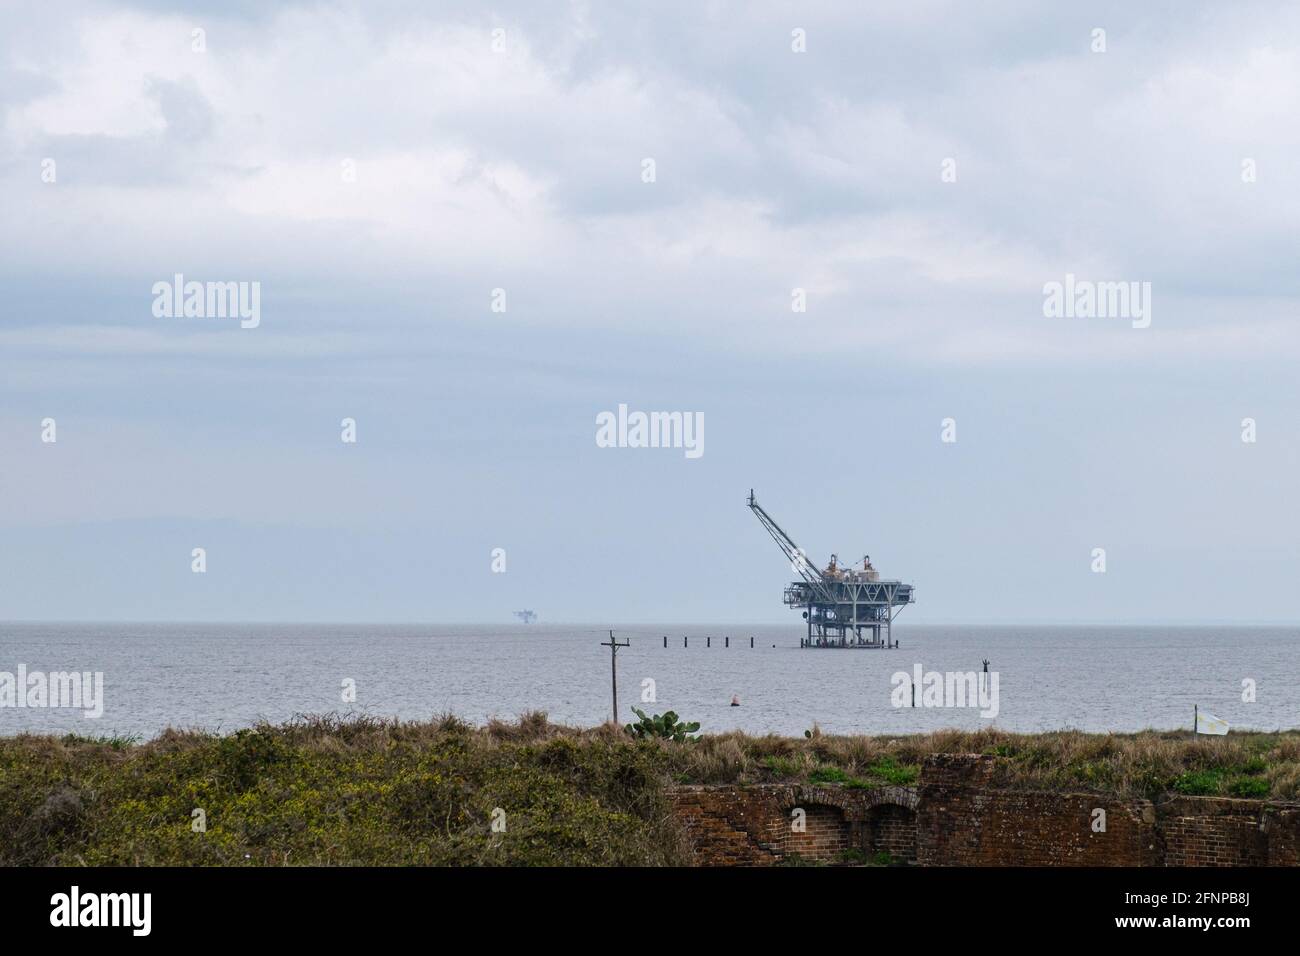 Oil rig in Mobile Bay, Alabama, USA Stock Photo